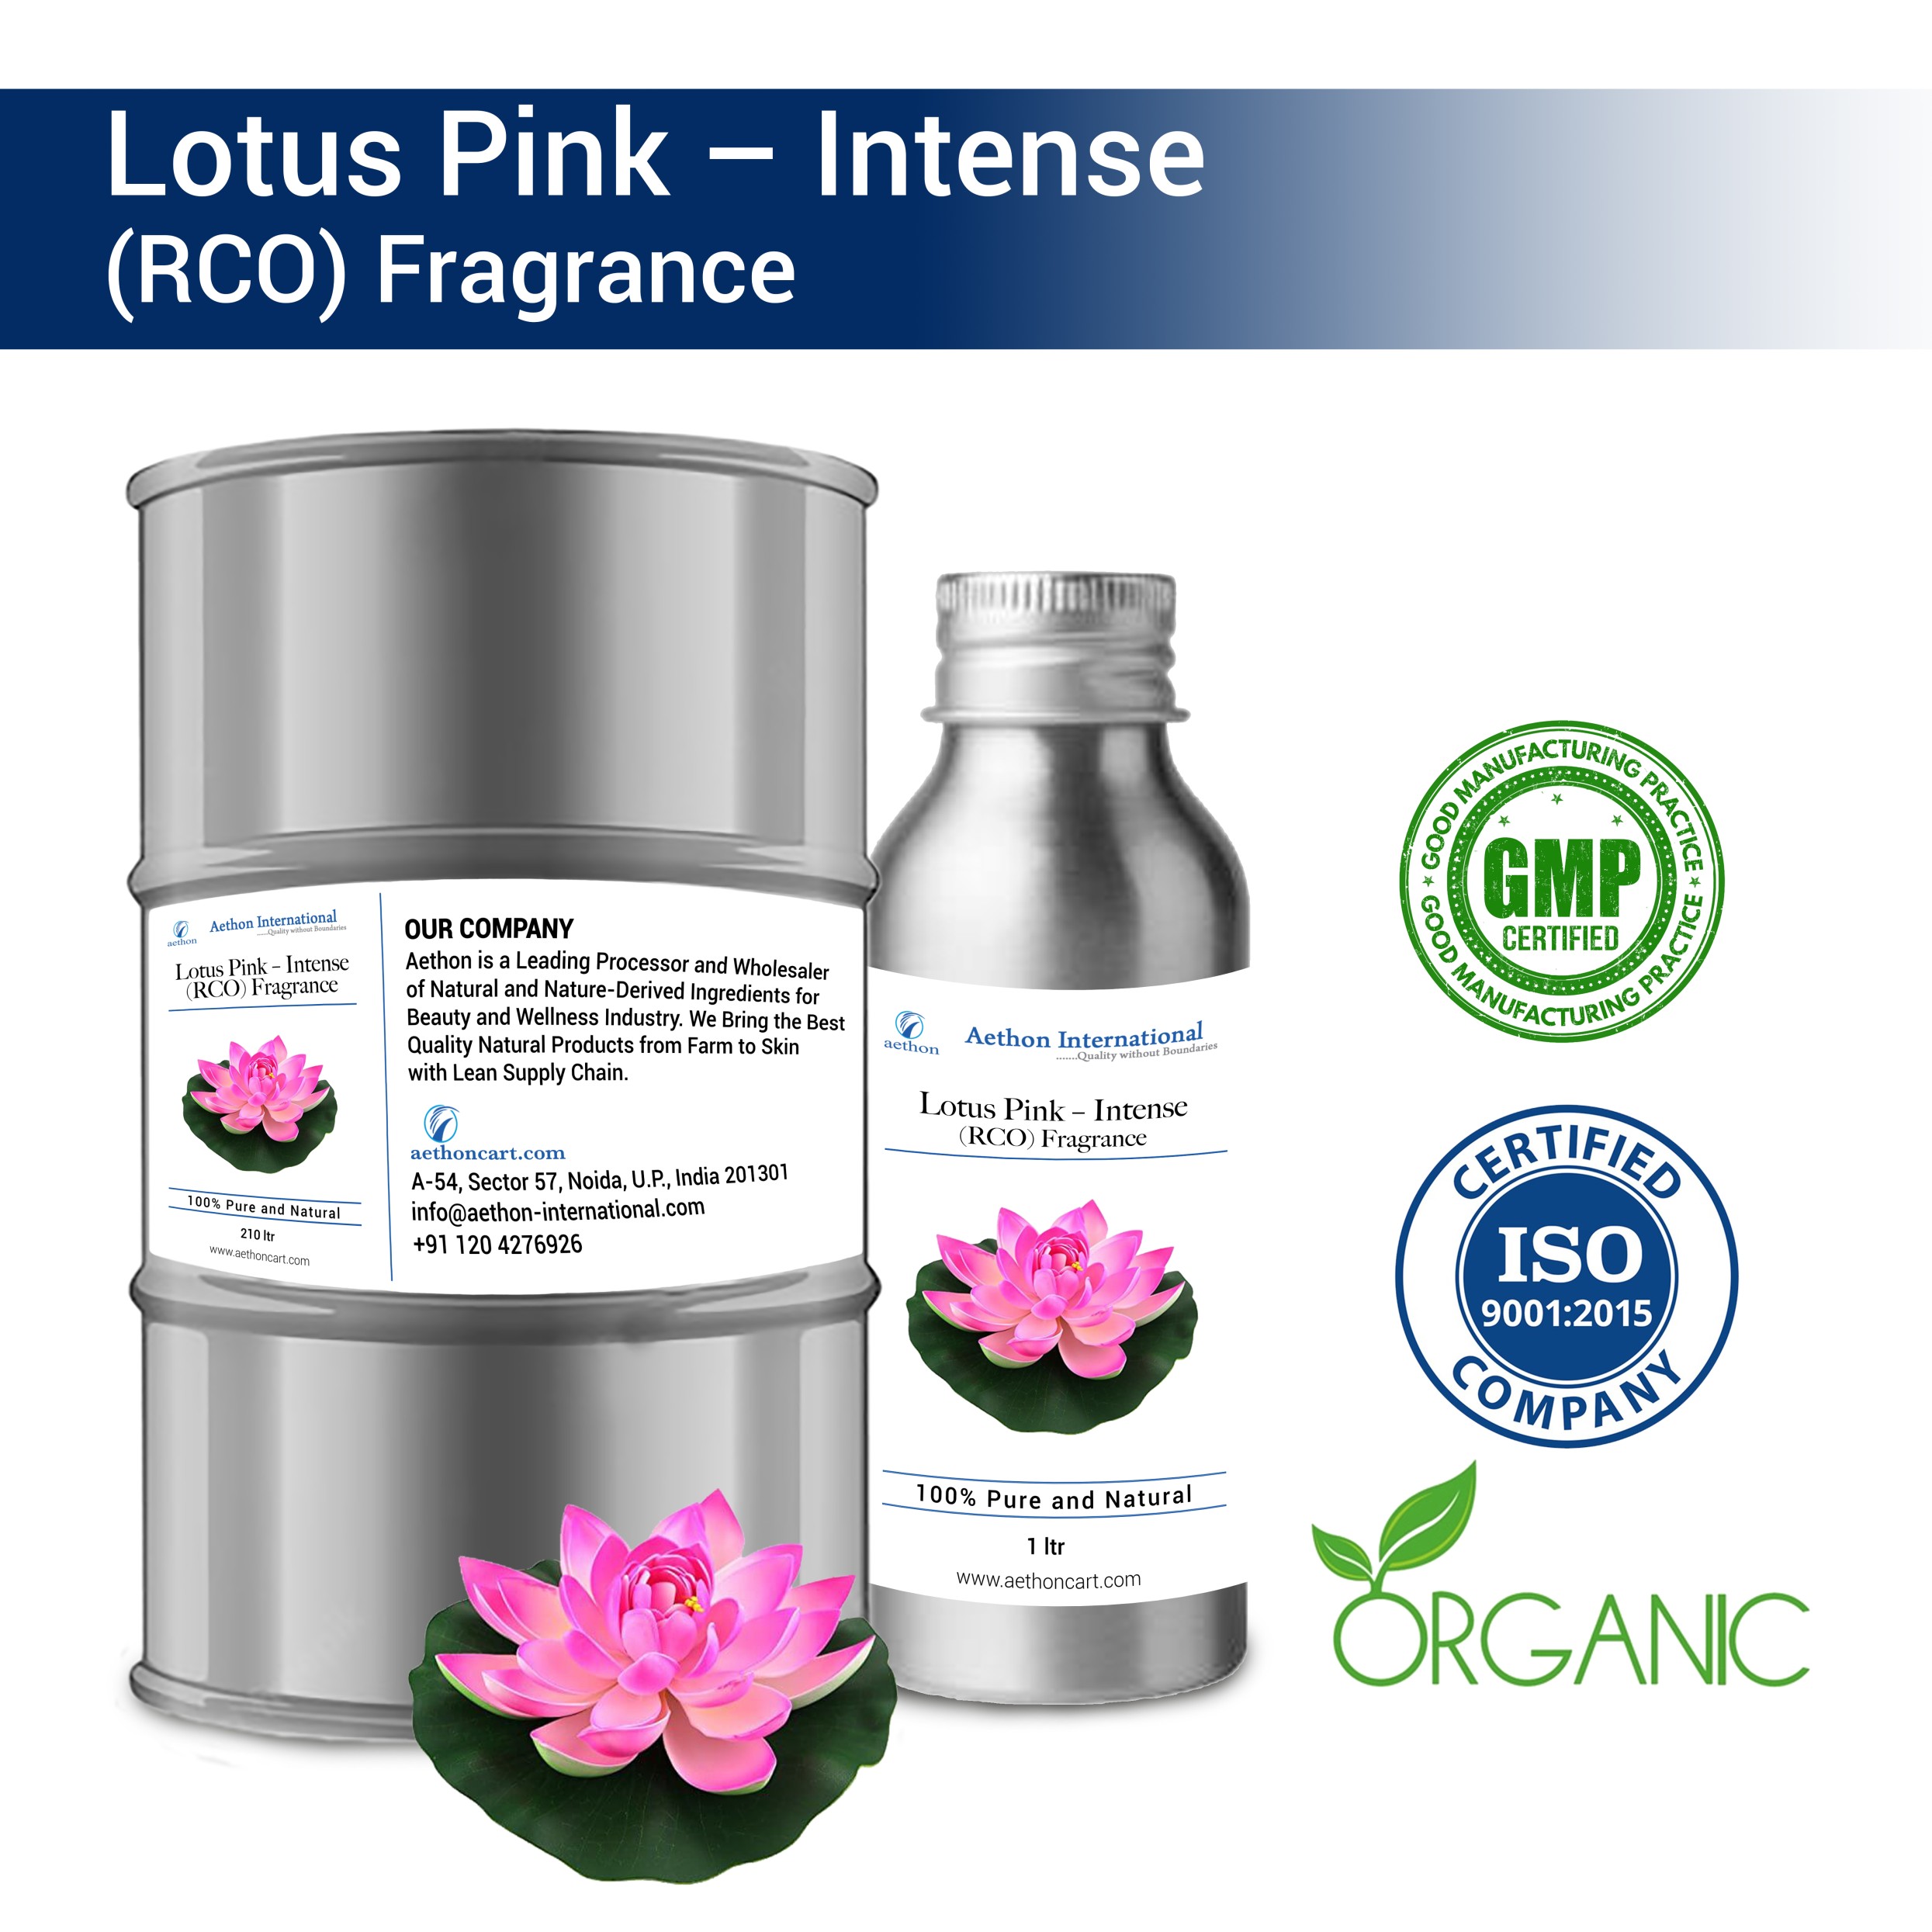 Lotus Pink (Intense) (RCO) Fragrance